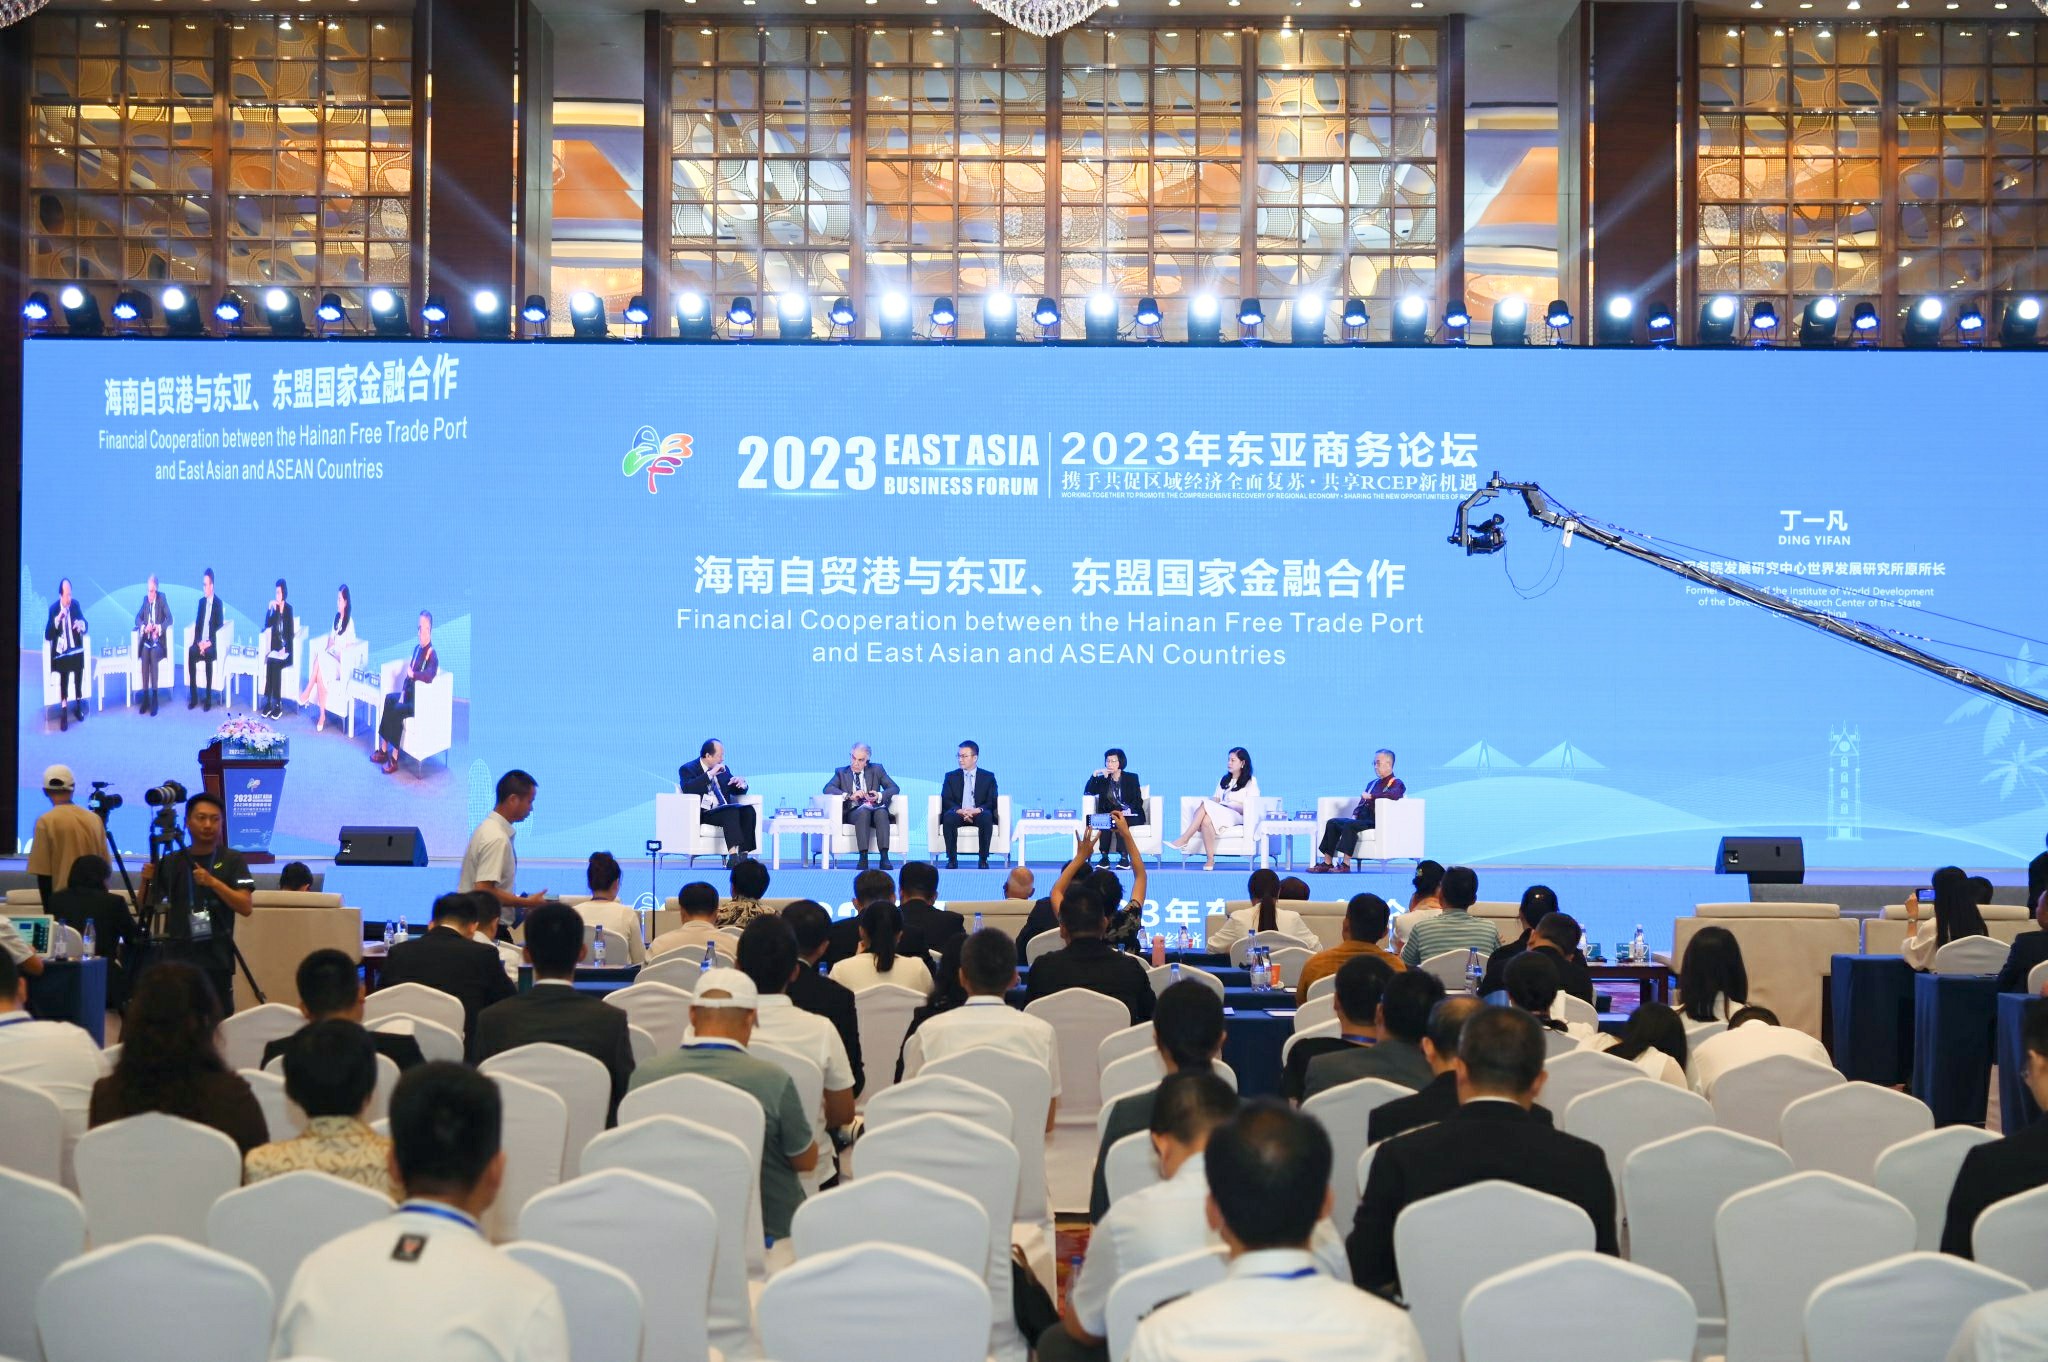 2023年東亞商務論壇第二場專題研討會——海南自貿港與東亞東盟國家經濟金融合作